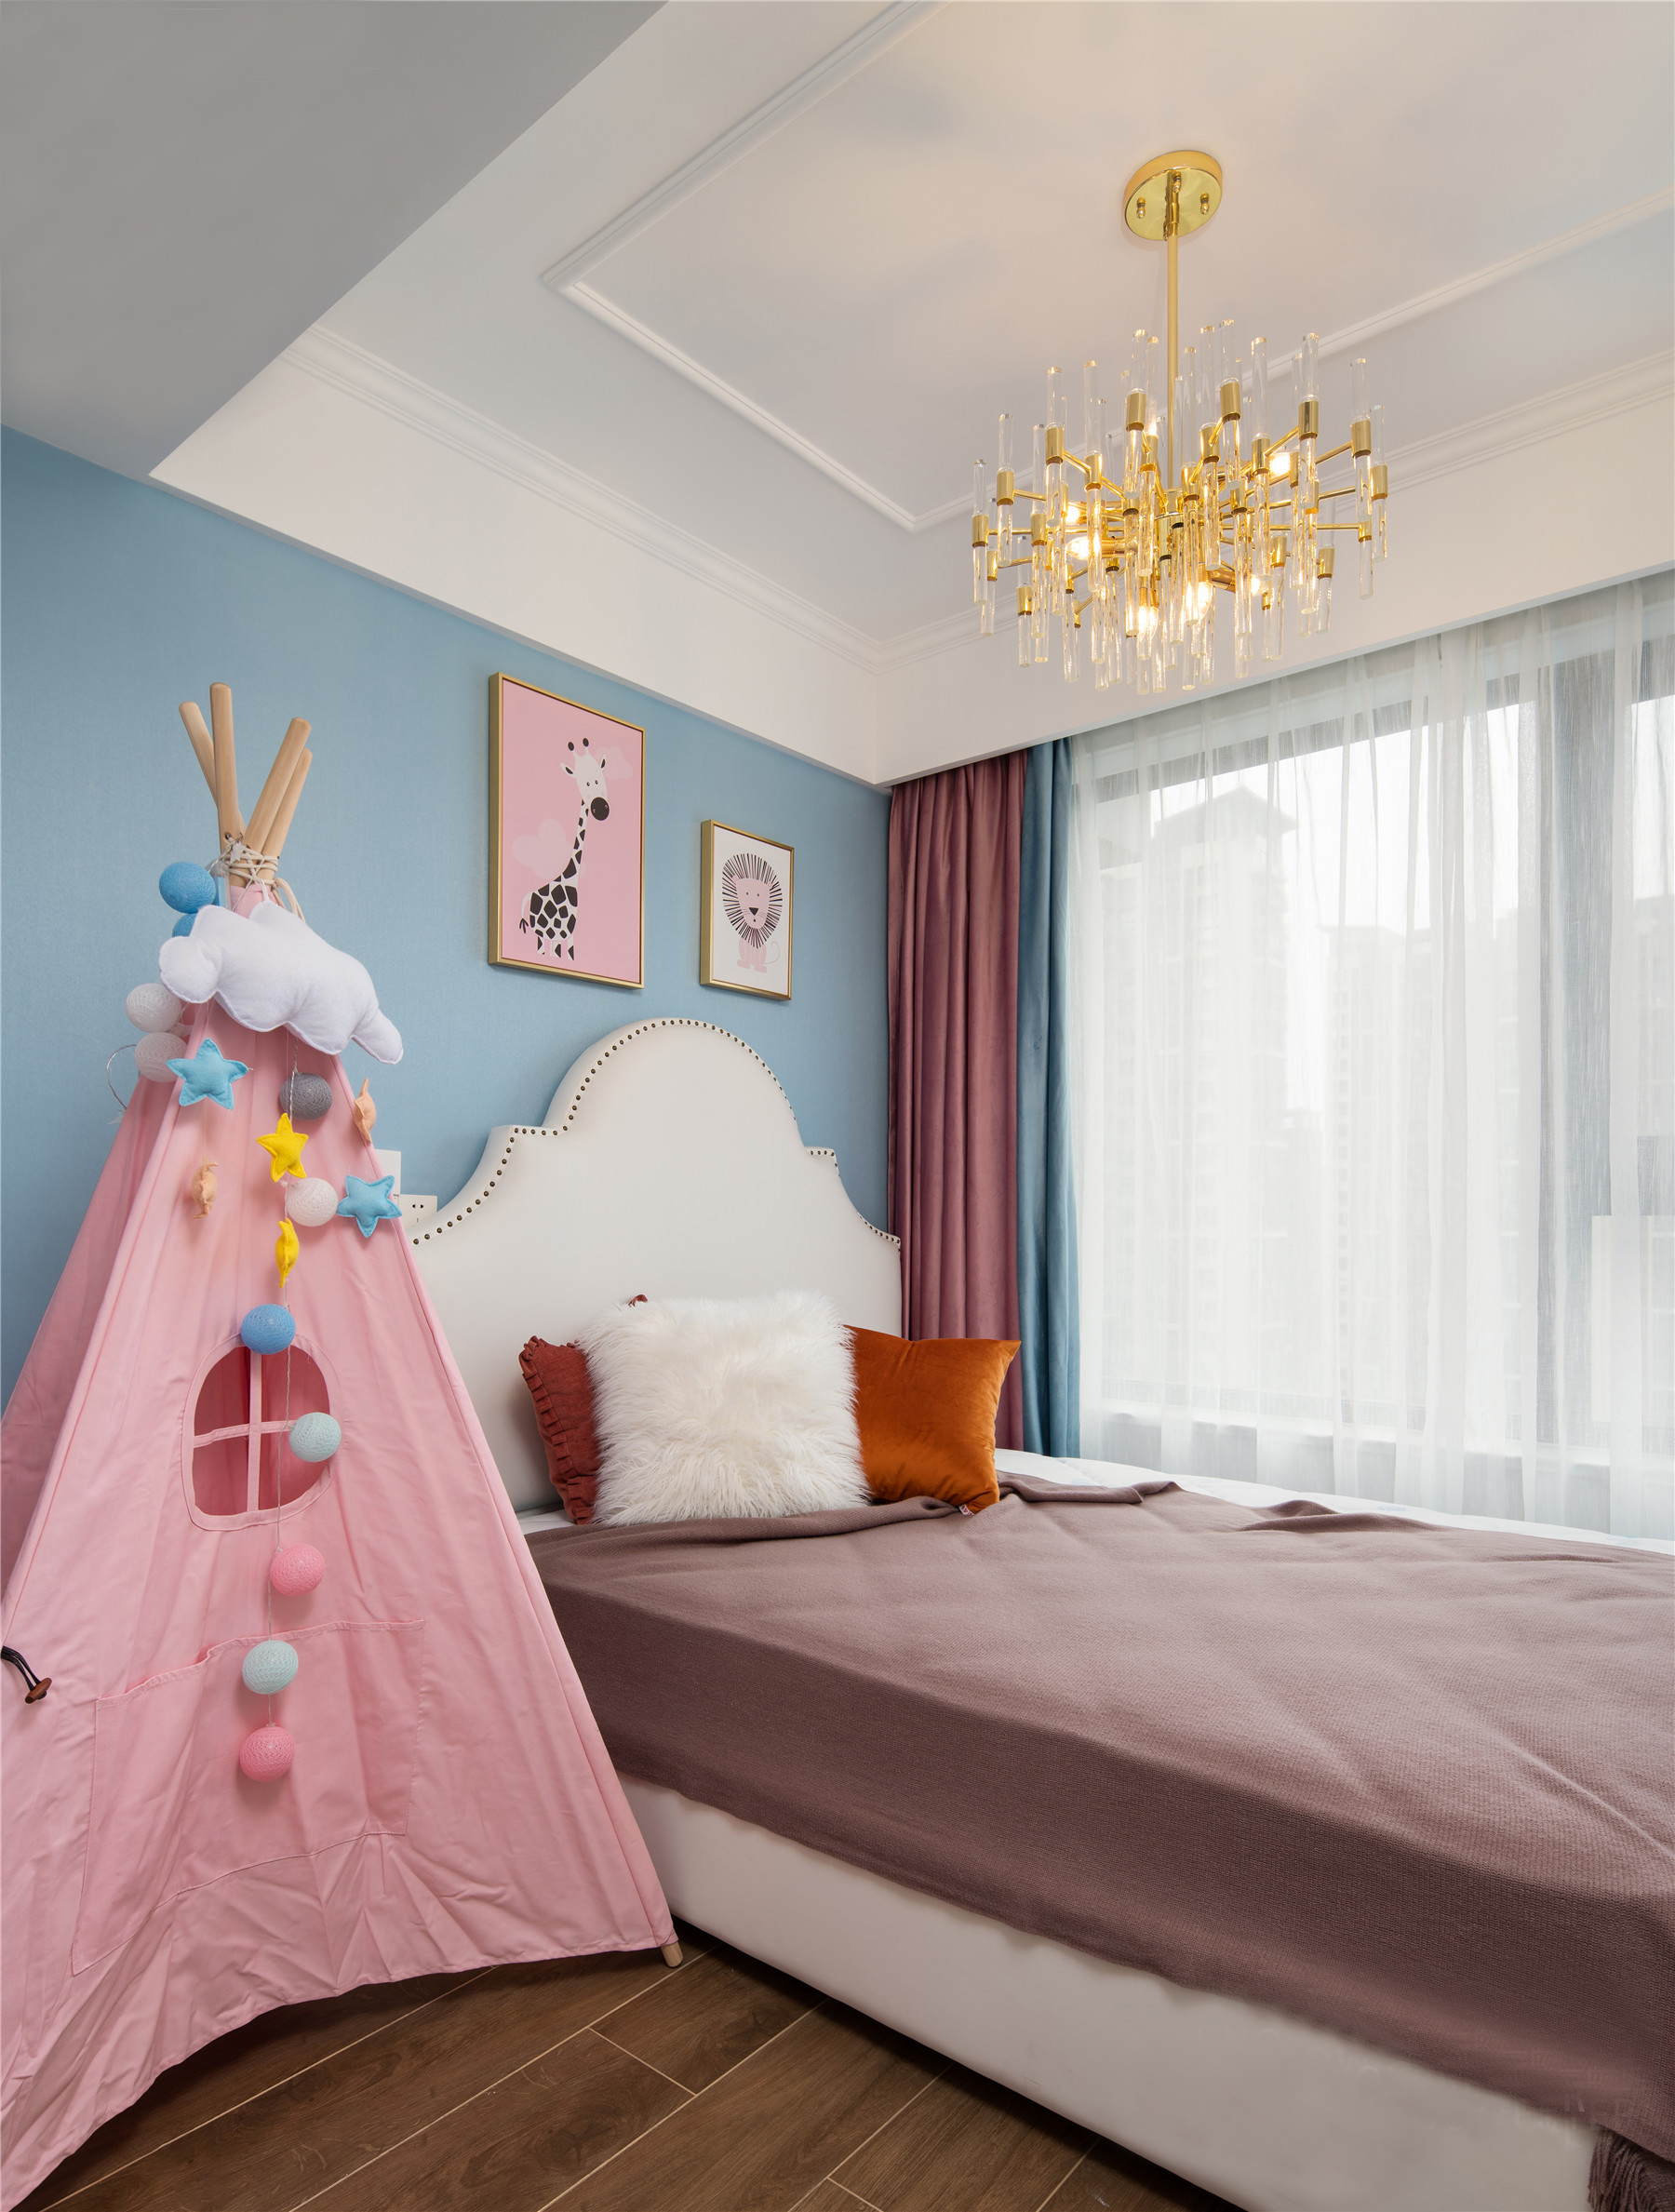 儿童房,使用了亮色来进行装饰,浅蓝色的墙面与白色家具以及粉色系床品